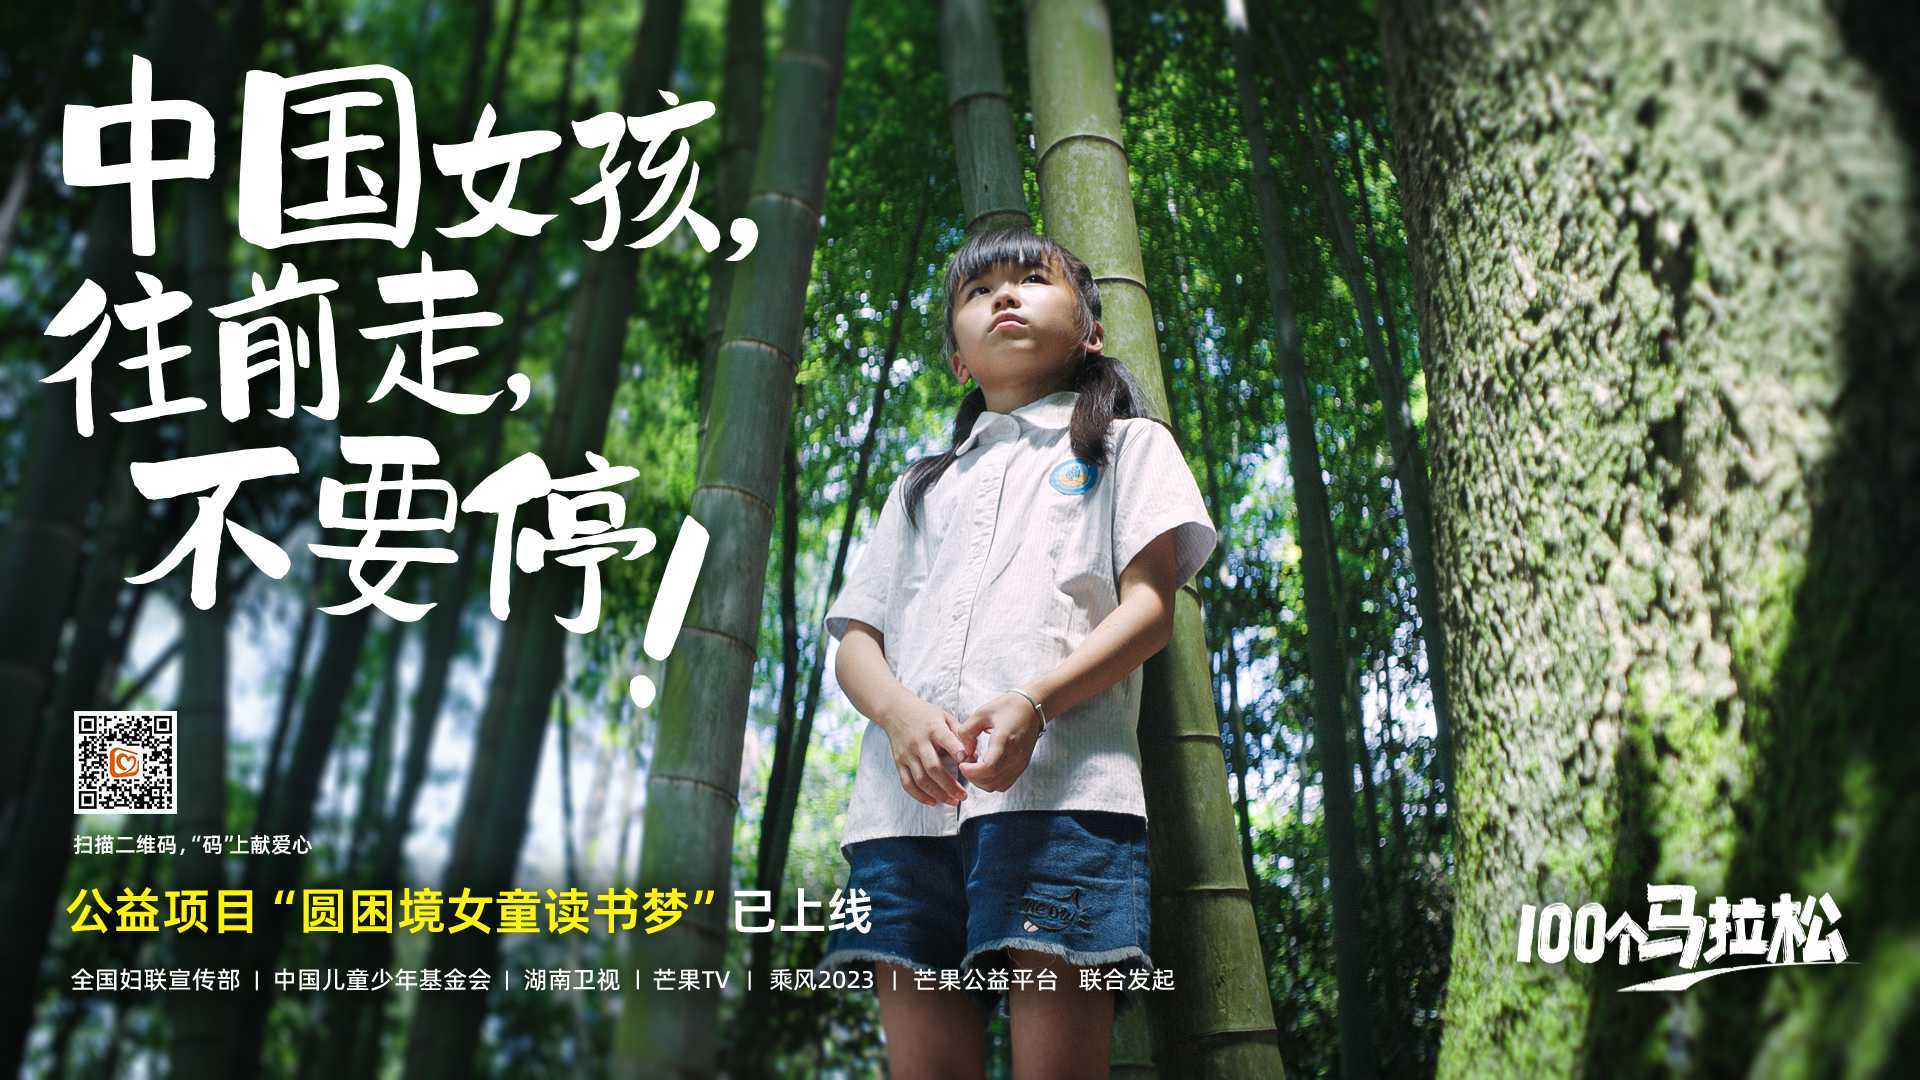 全国妇联宣传部 | 中国儿童少年基金会—「100个马拉松」